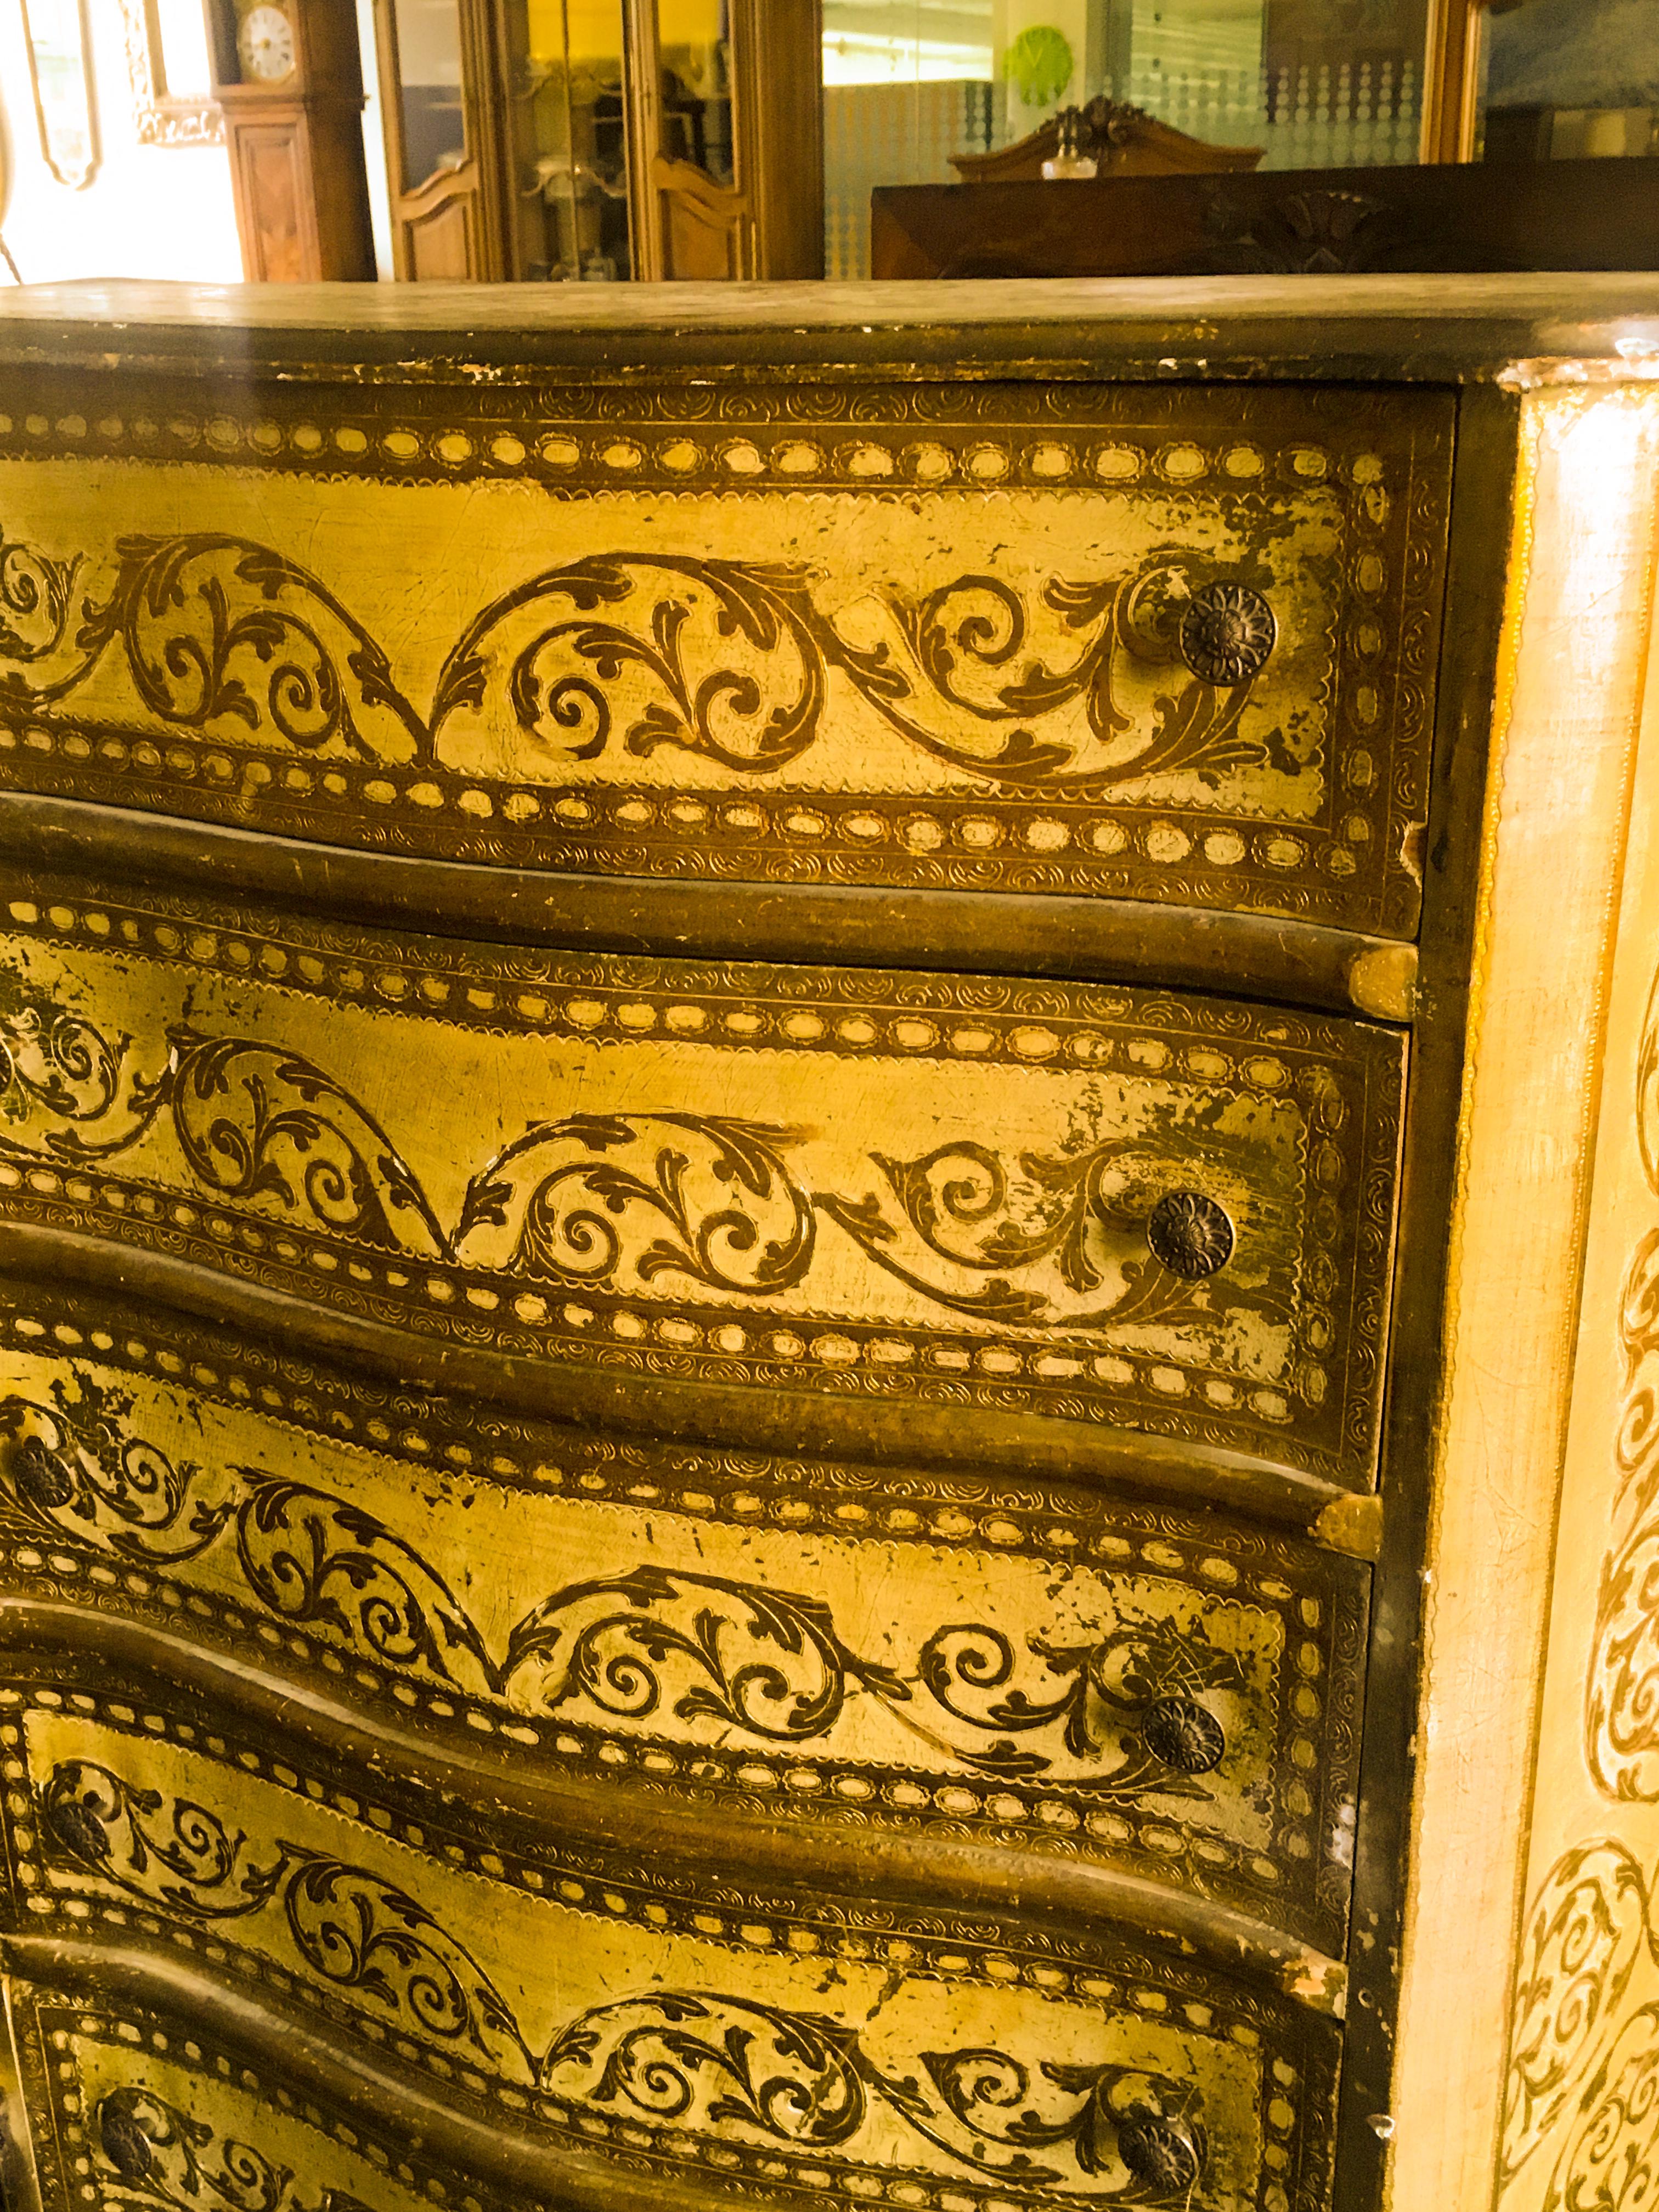 italienisches Seminar des 20. Jahrhunderts, dreiseitig geschwungen, aus beigefarbenem Holz mit goldenen Details, mit sieben Schubladen, die auf kleinen geschwungenen Füßen im Louis XV-Stil ruhen.
Italien, um 1950.